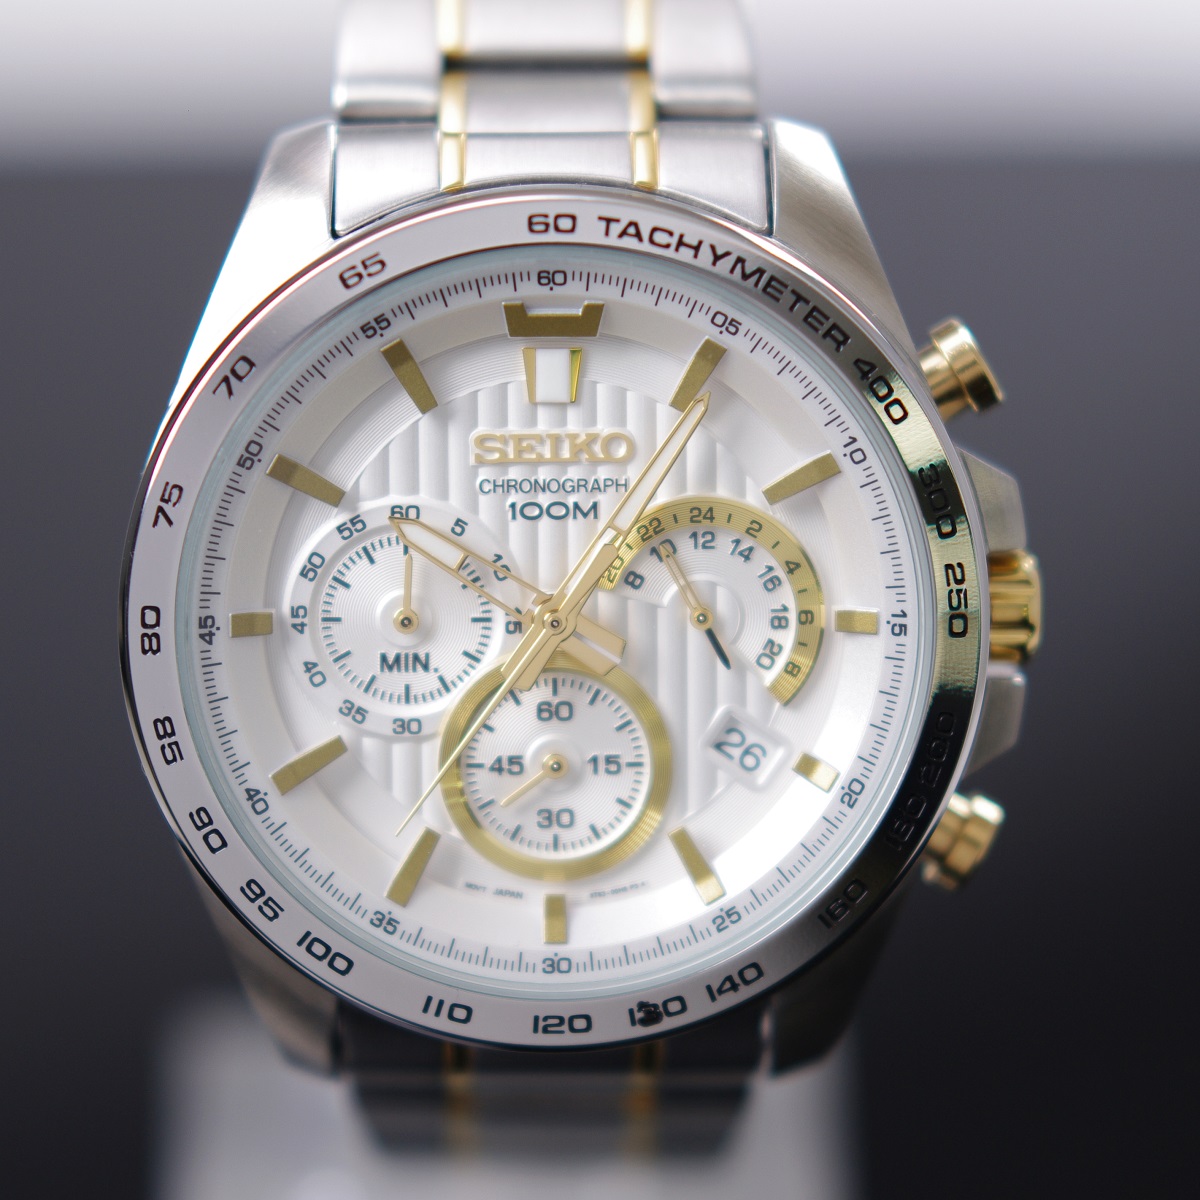 【楽天市場】セイコー SEIKO 腕時計 クオーツ クロノグラフ 100M防水 ホワイト文字盤 海外モデル SSB309P1 メンズ [逆輸入